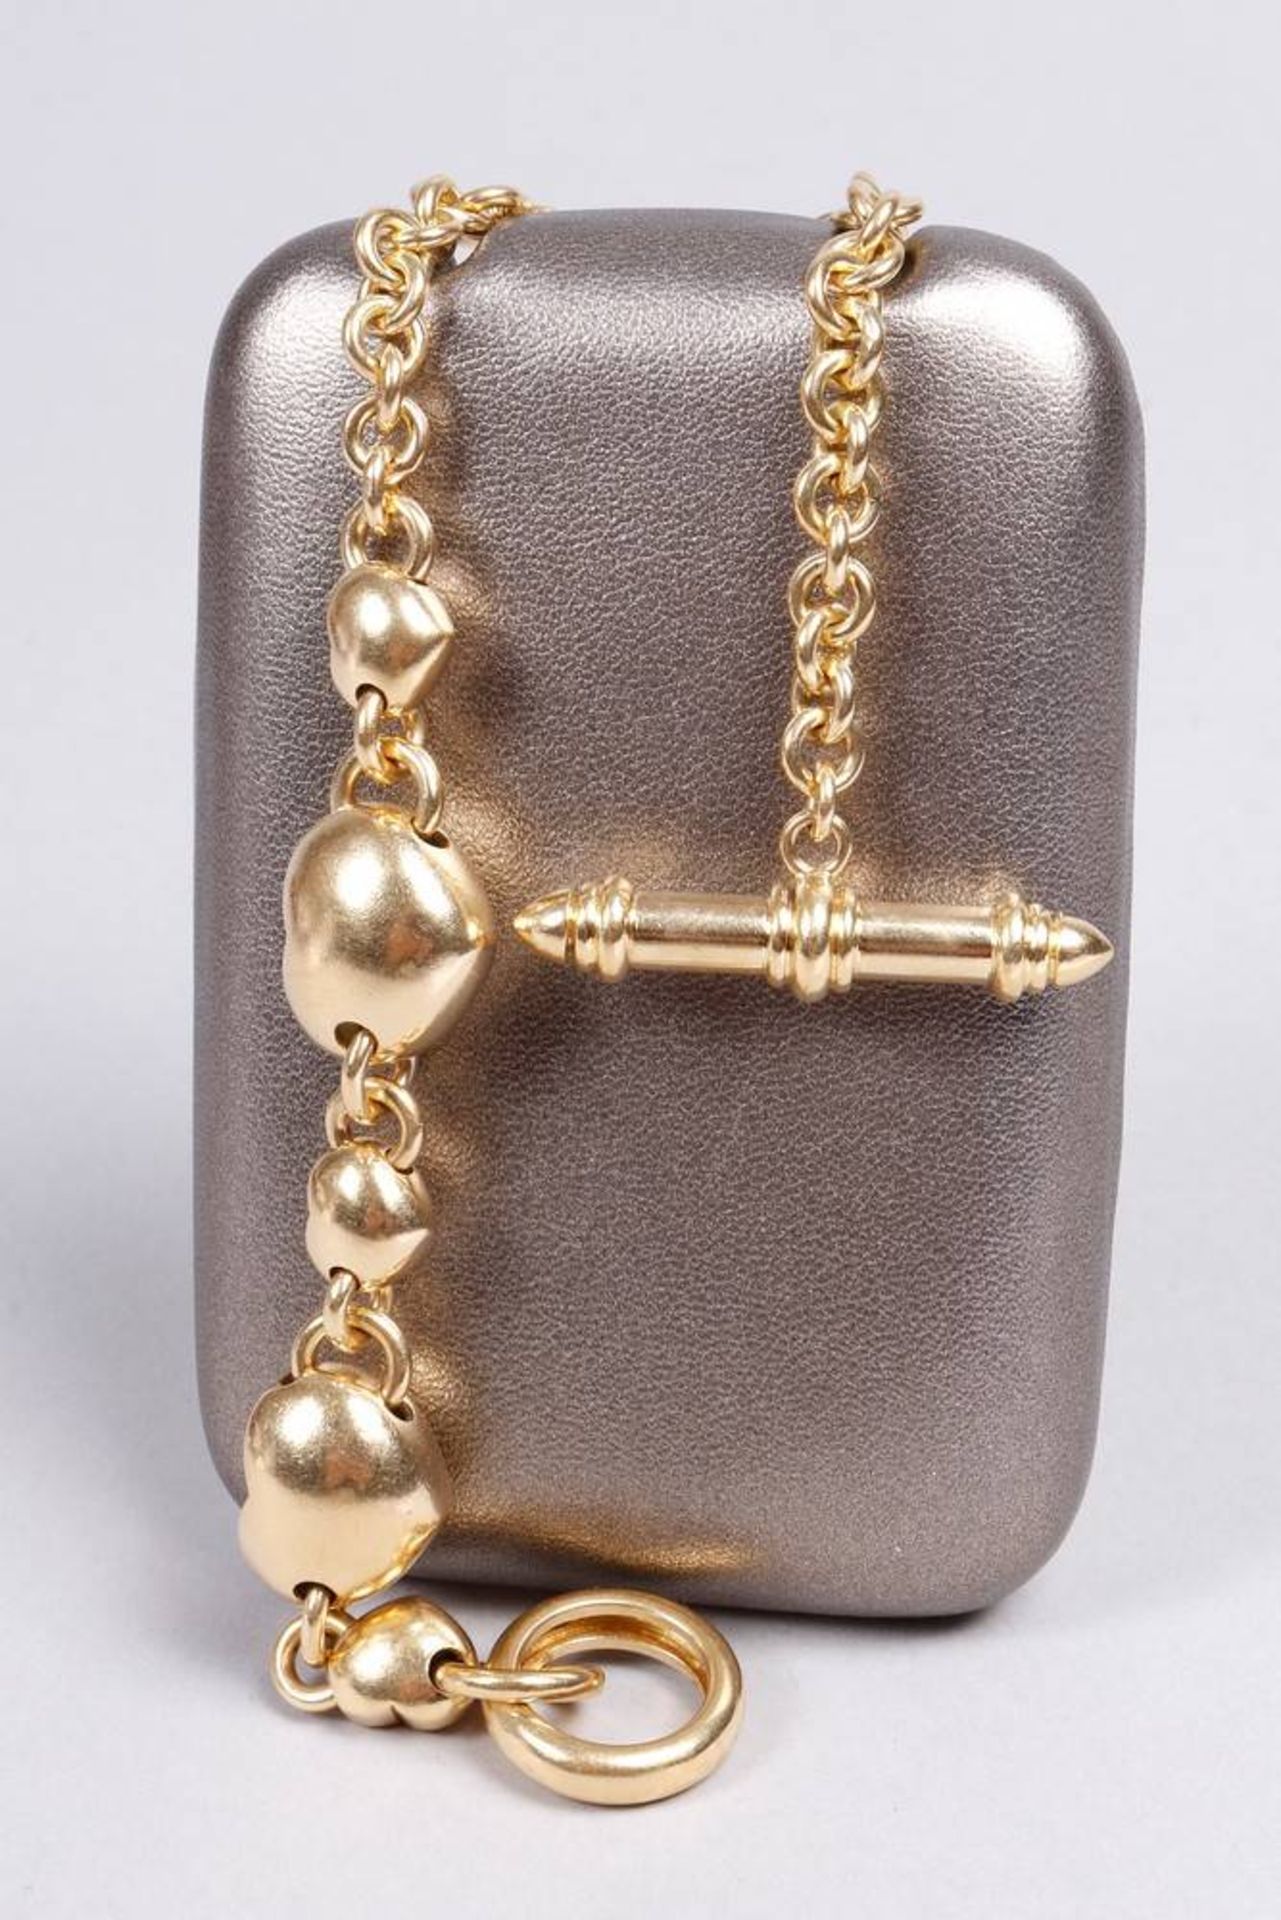 Solid gold bracelet, 750 gold, manufacturer Leopatra - Image 2 of 4